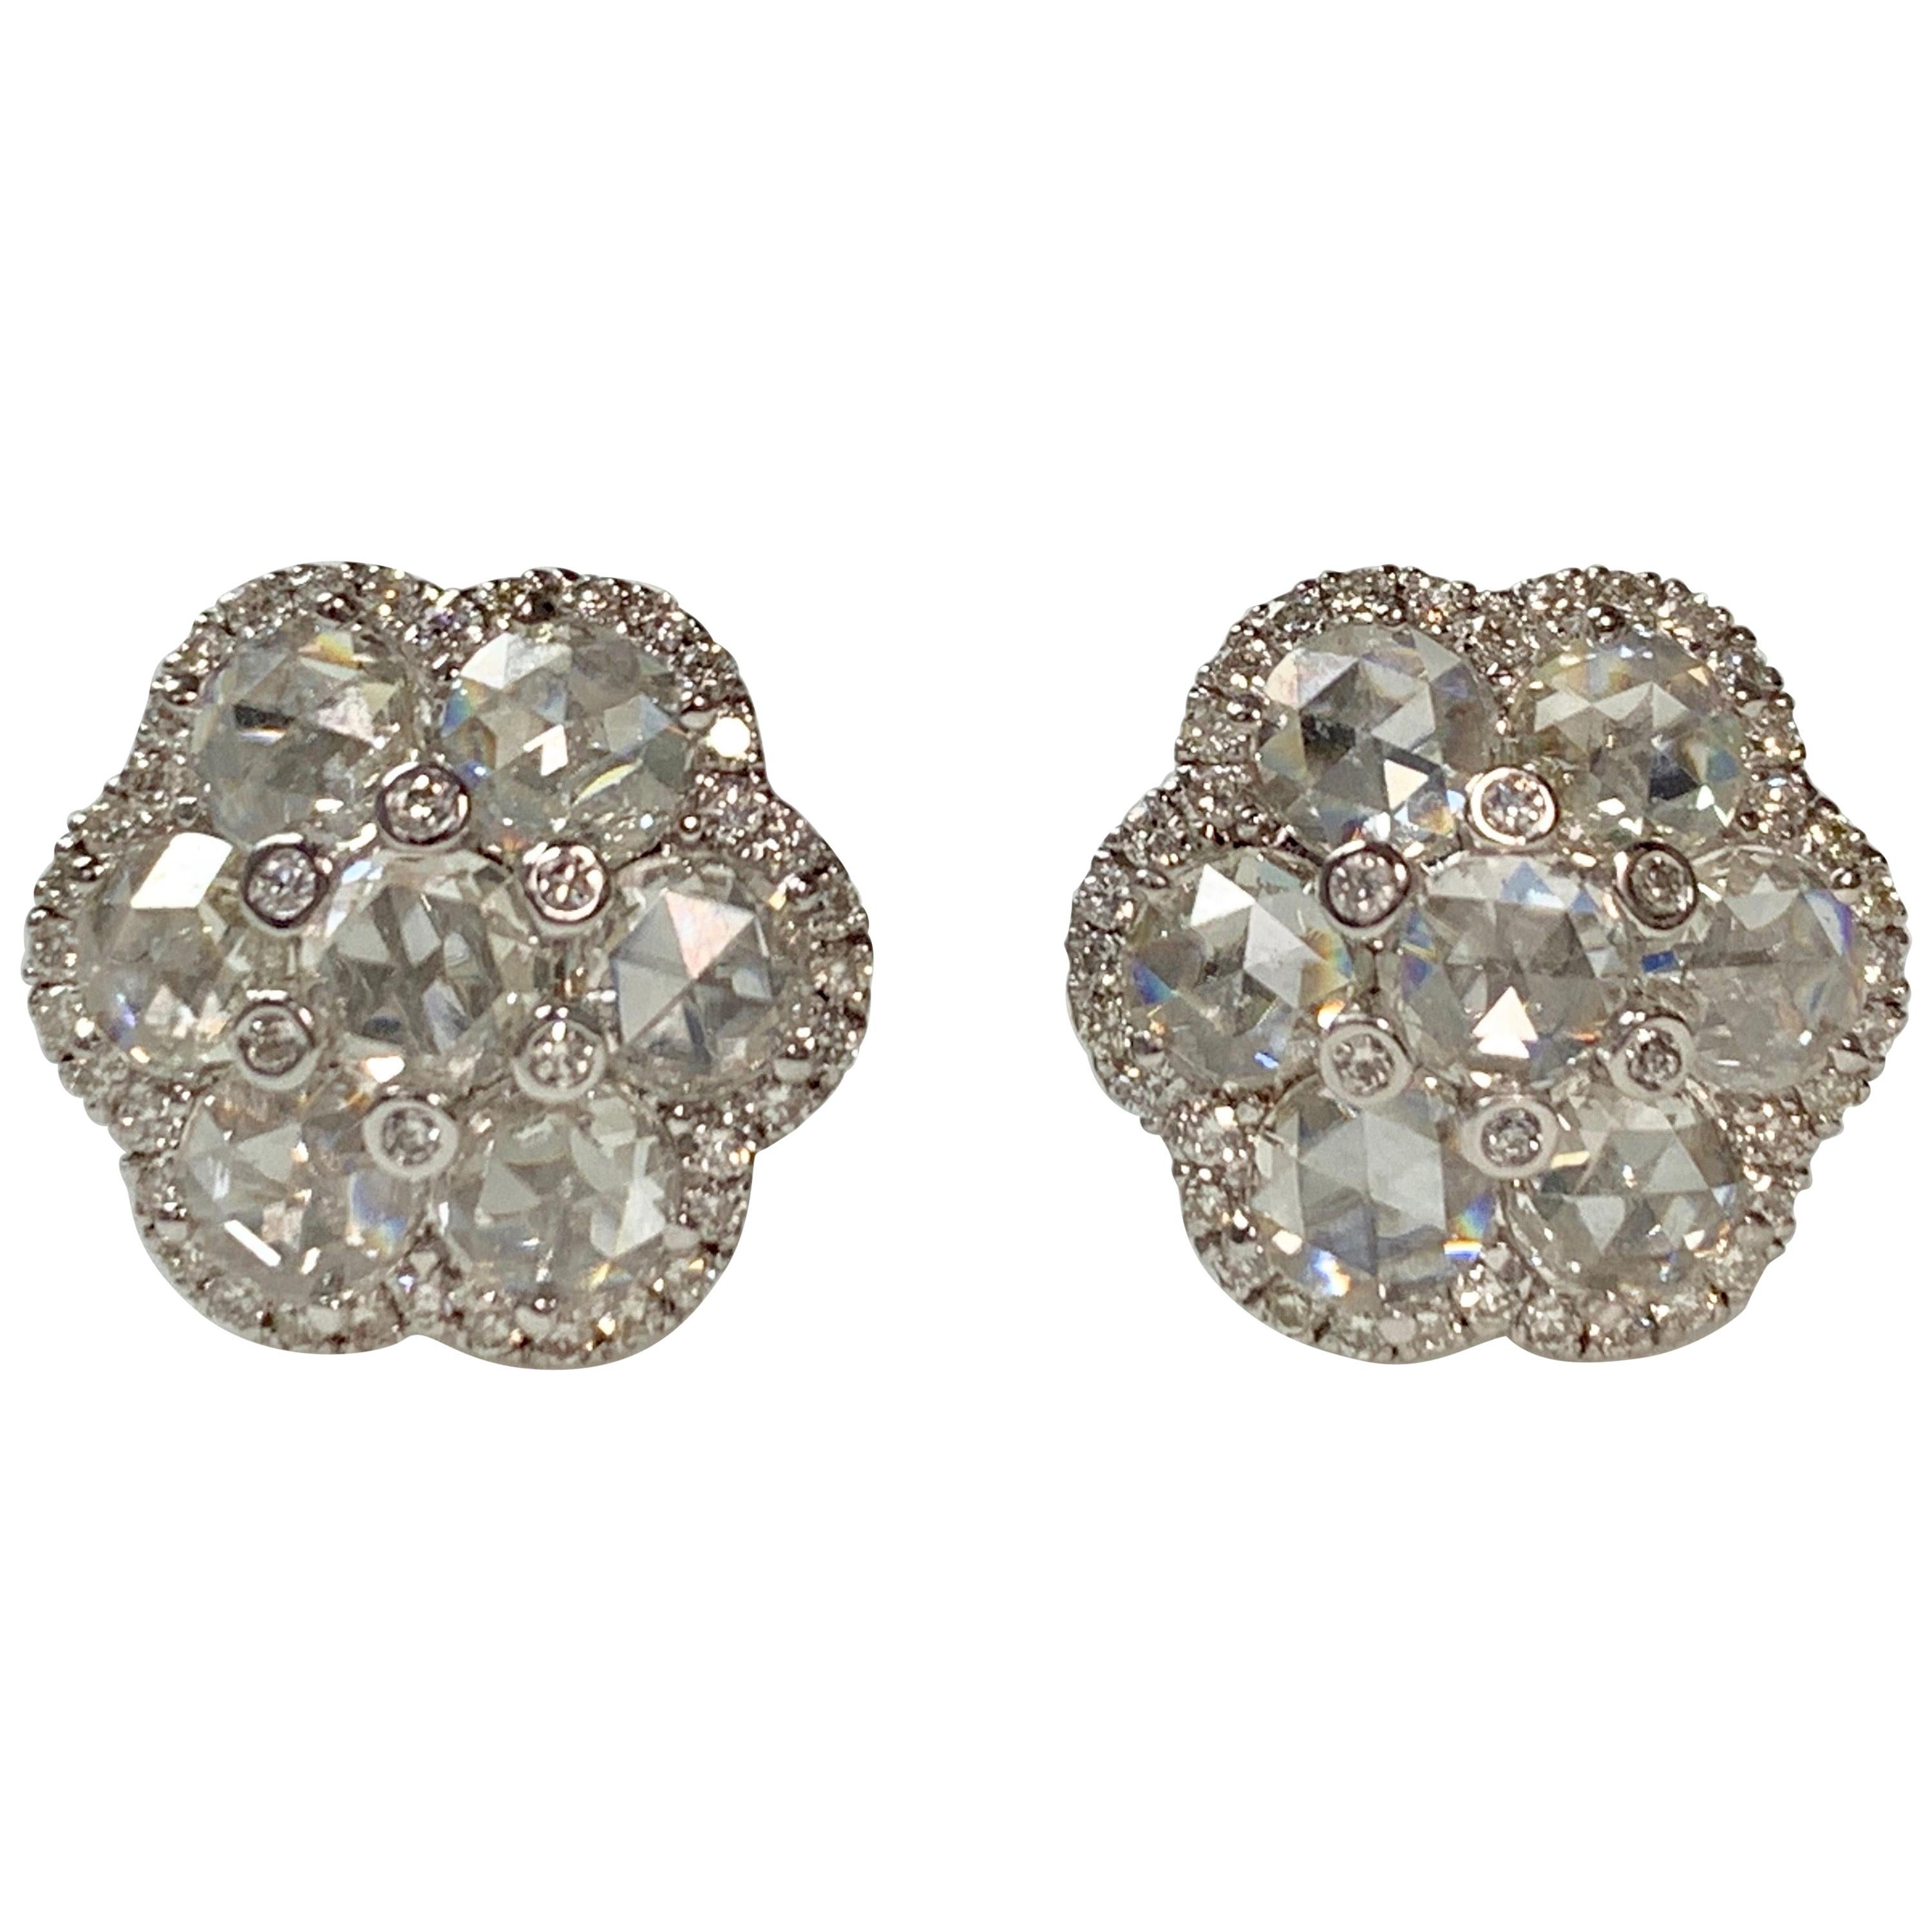 White Rose Cut Diamond Stud Earrings in 18 Karat White Gold